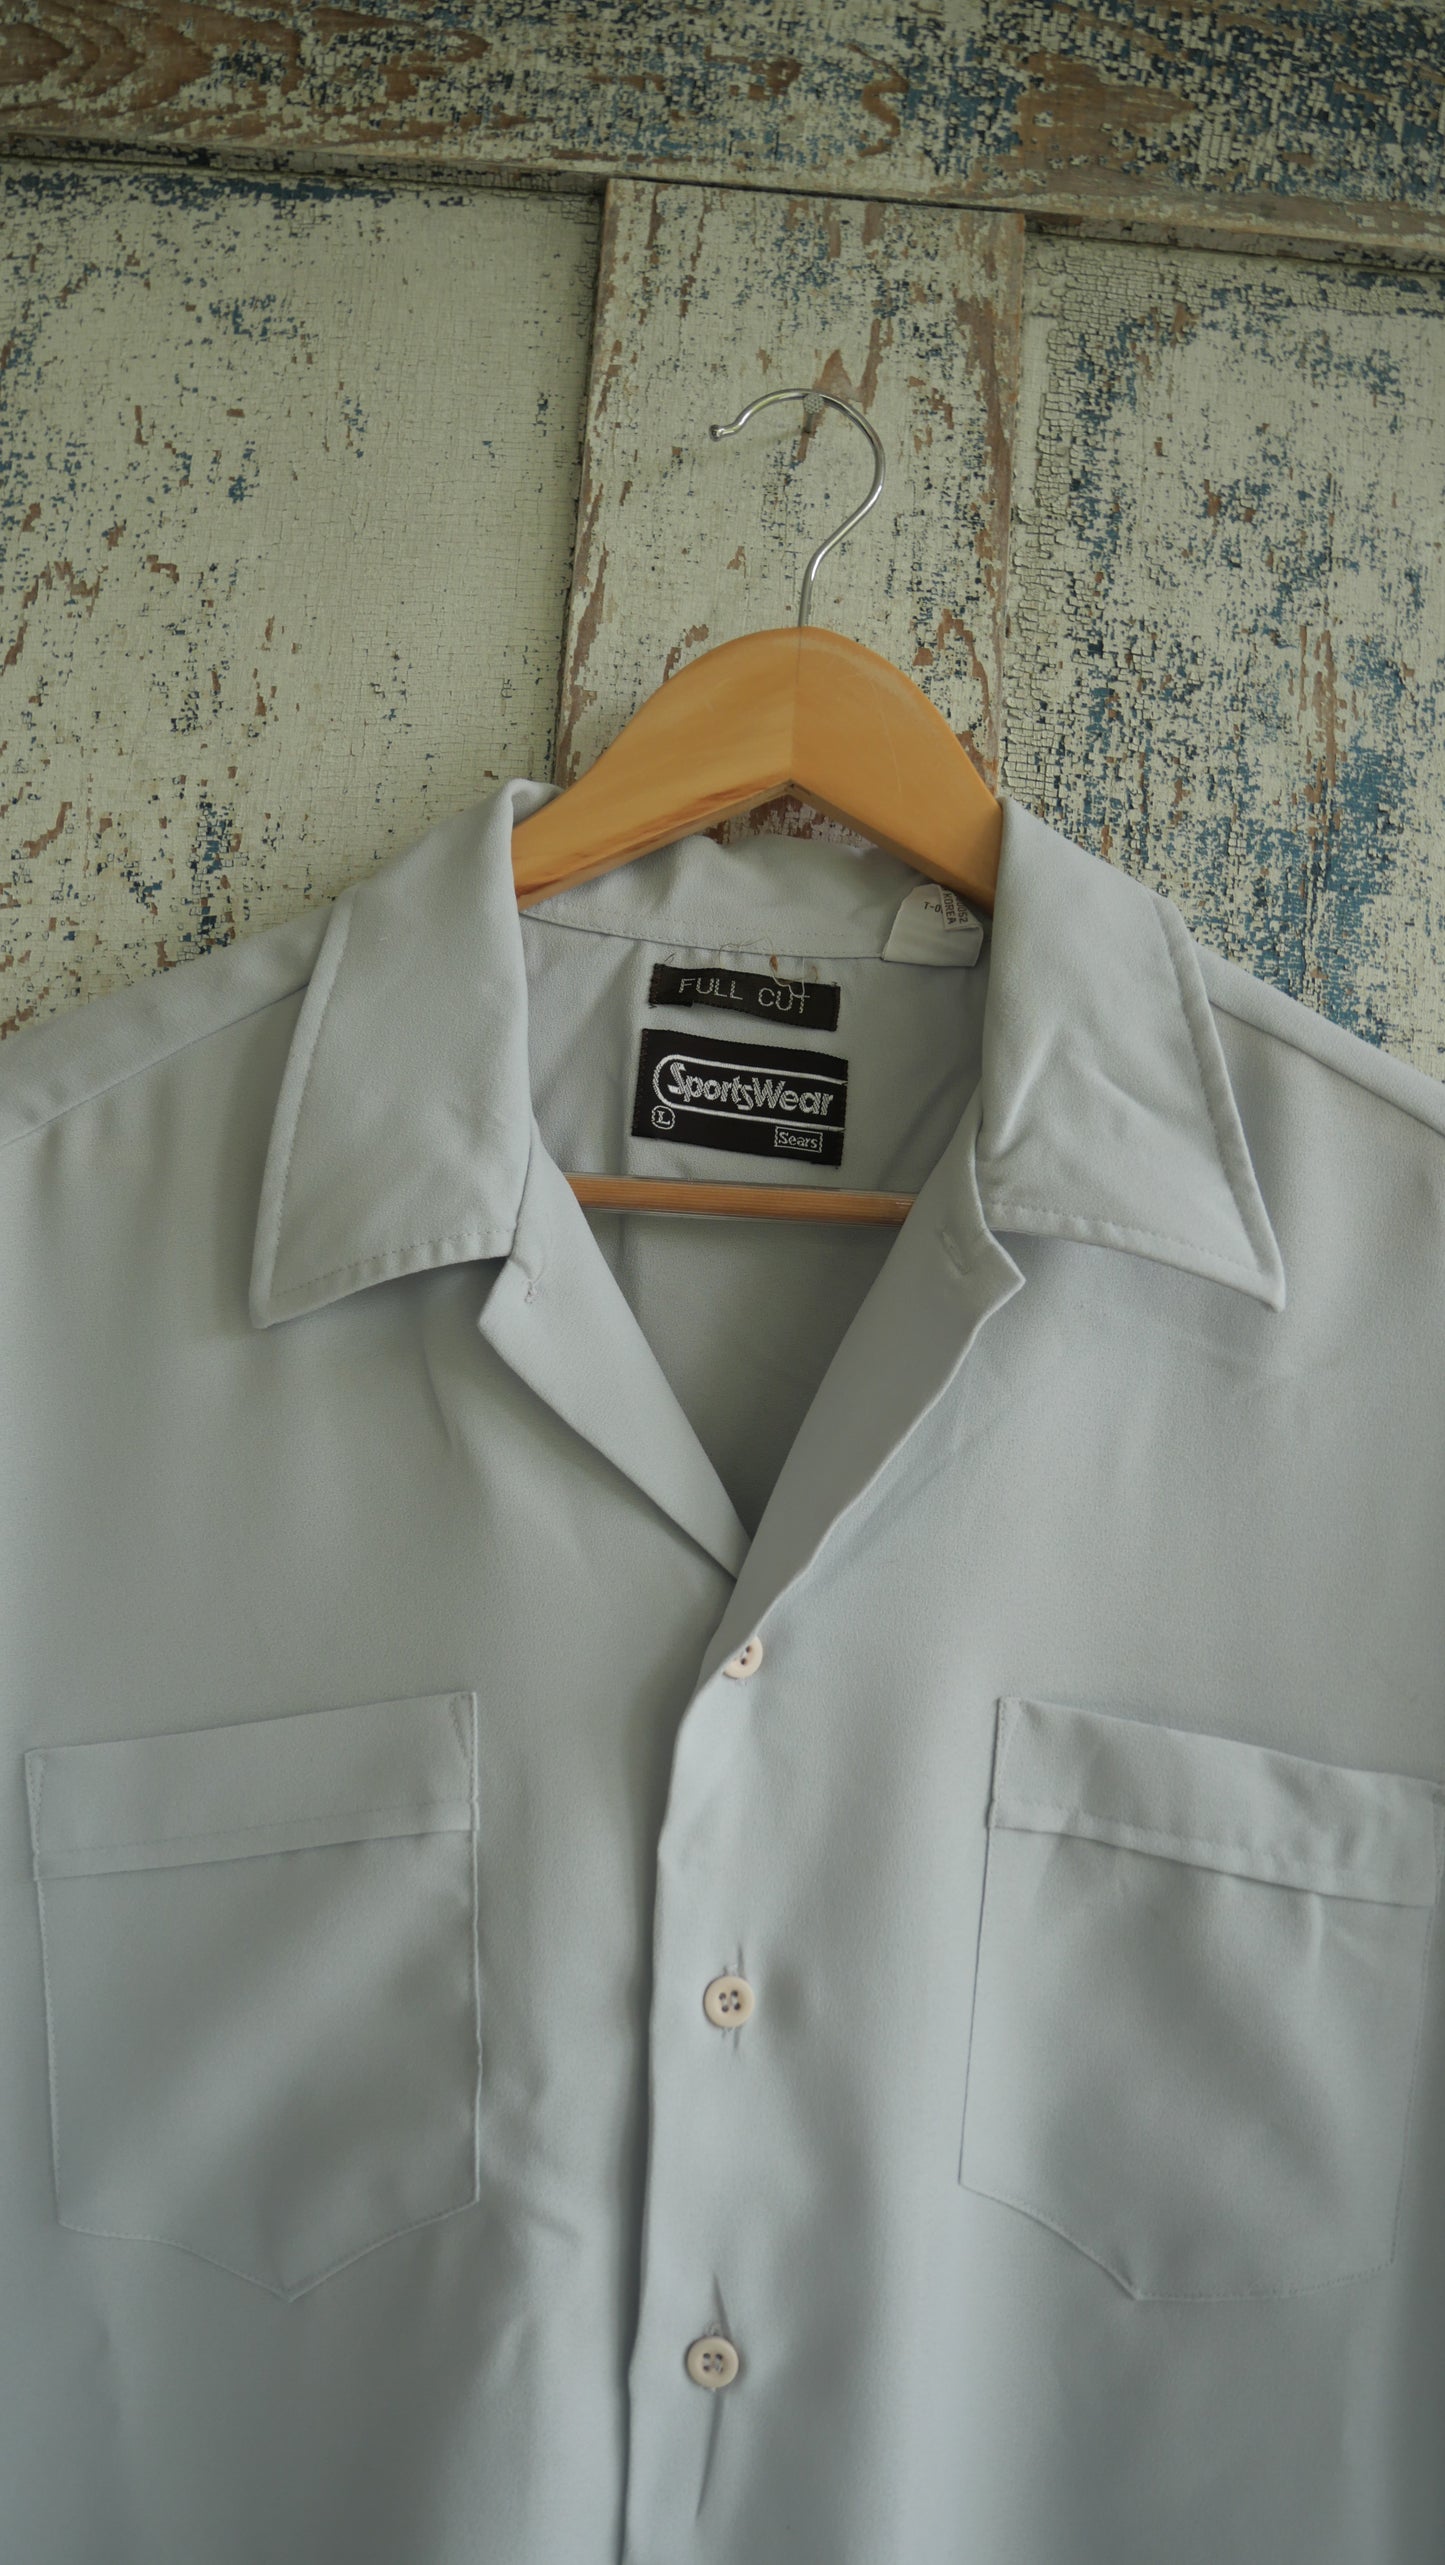 1970s Camp Collar Shirt | L